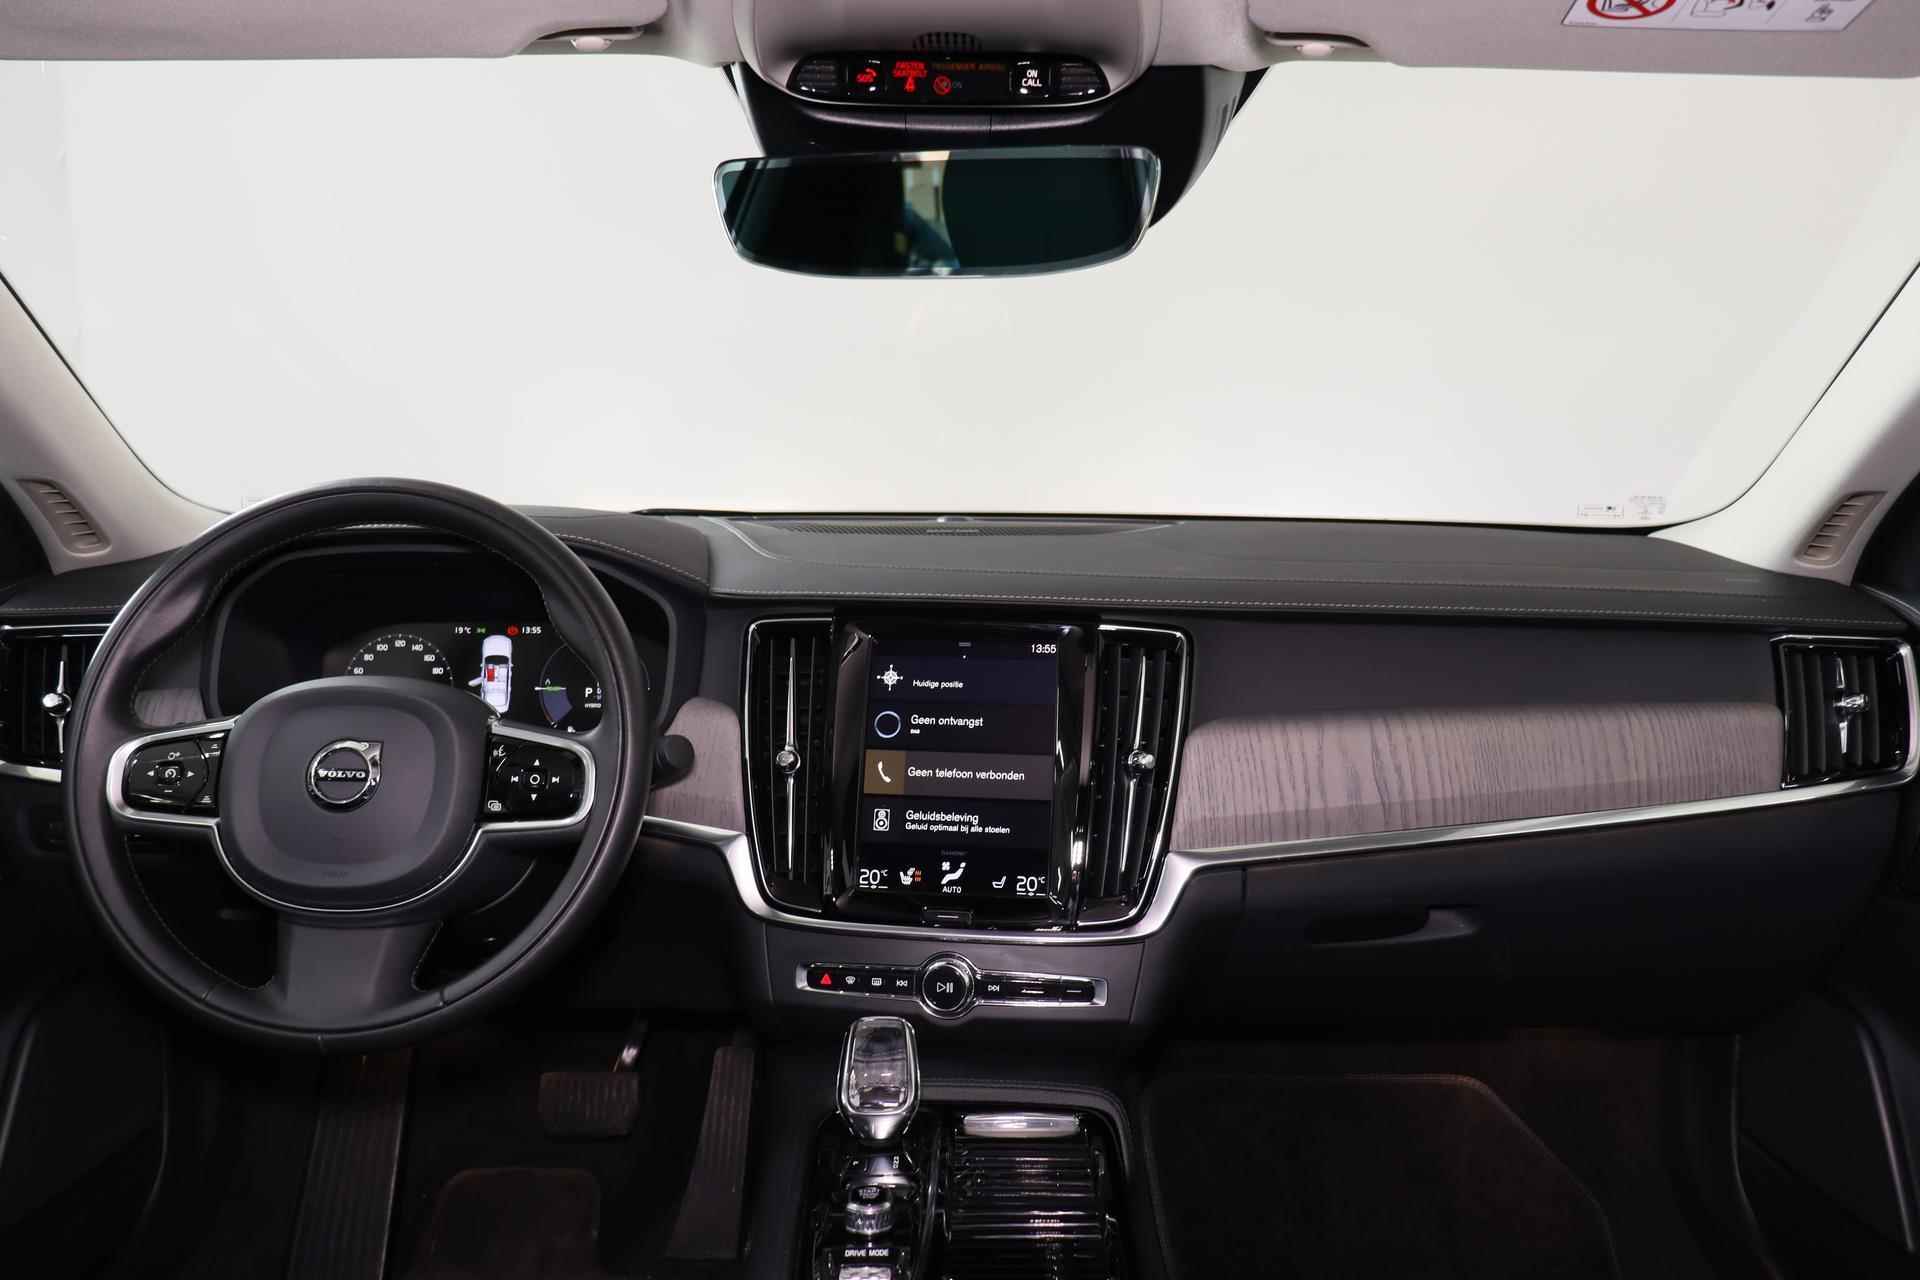 Volvo S90 T8 AWD Inscription - IntelliSafe Assist & Surround - 360º Camera - Harman/Kardon audio - Adaptieve LED koplampen - Verwarmde voorstoelen, stuur & achterbank - Parkeersensoren voor & achter - Elektr. bedienb. voorstoelen met geheugen - Standkachel - 19' LMV - 24/26